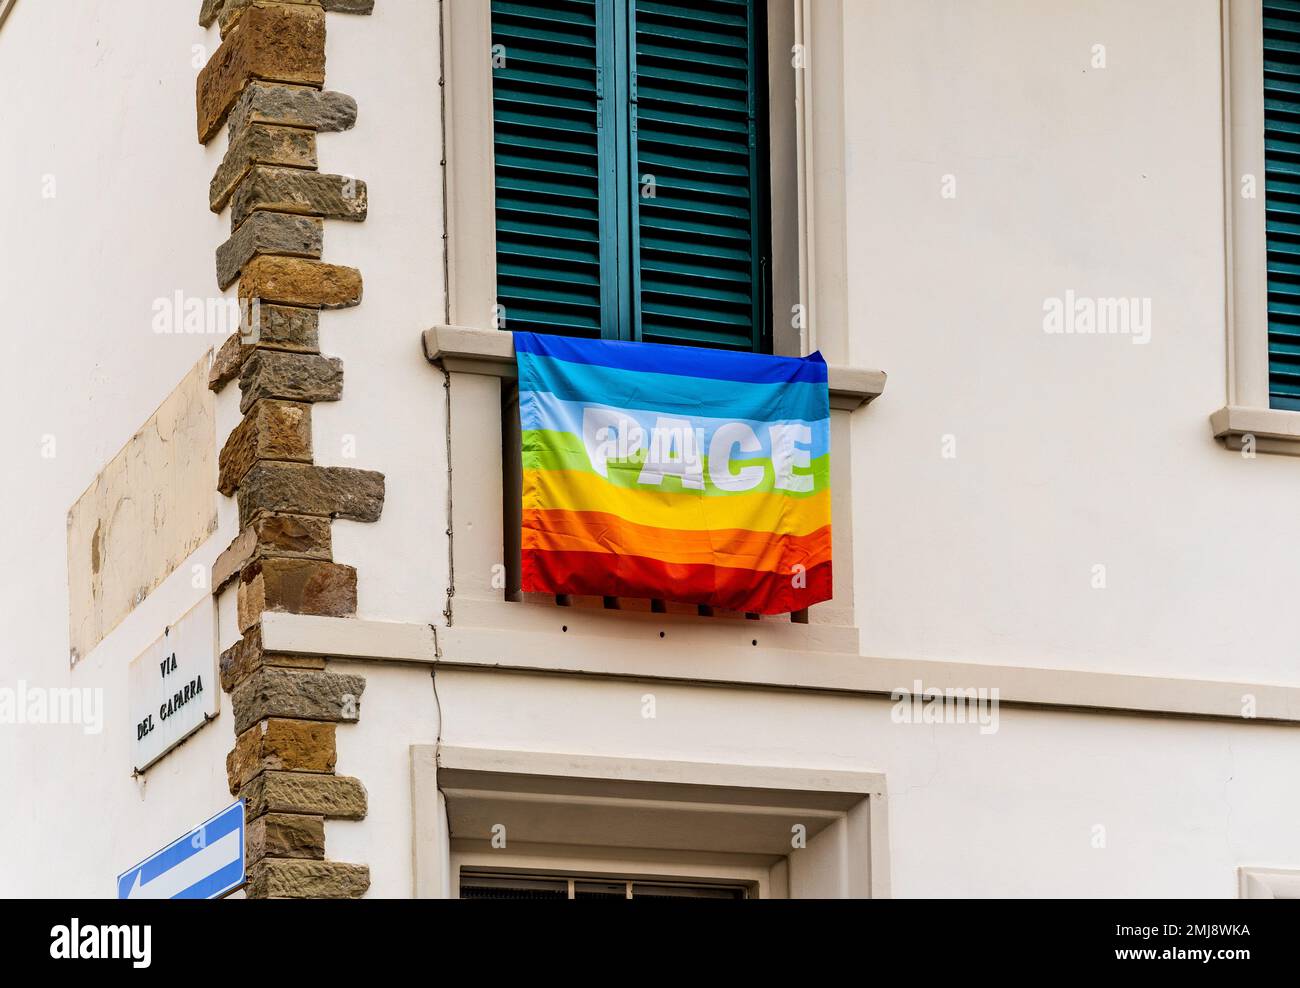 Un drapeau arc-en-ciel avec le mot italien « Pace » signifiant « Peace » écrit sur lui à une fenêtre dans le centre-ville de Florence, en Toscane, en Italie Banque D'Images